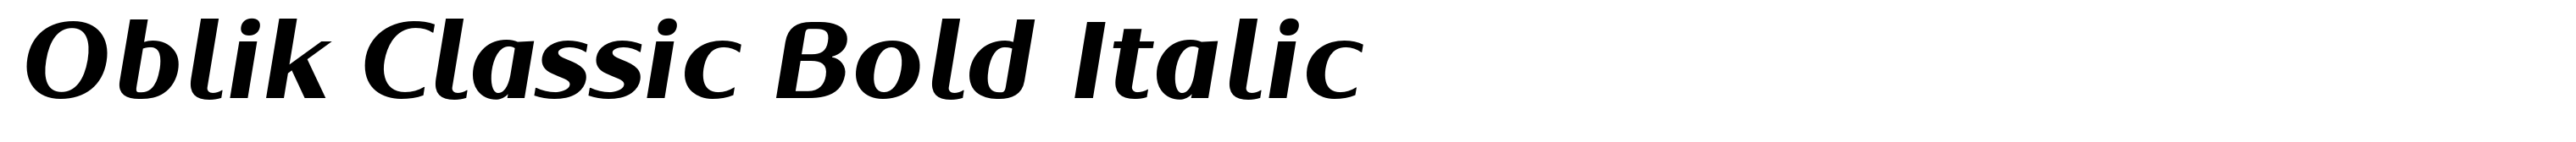 Oblik Classic Bold Italic